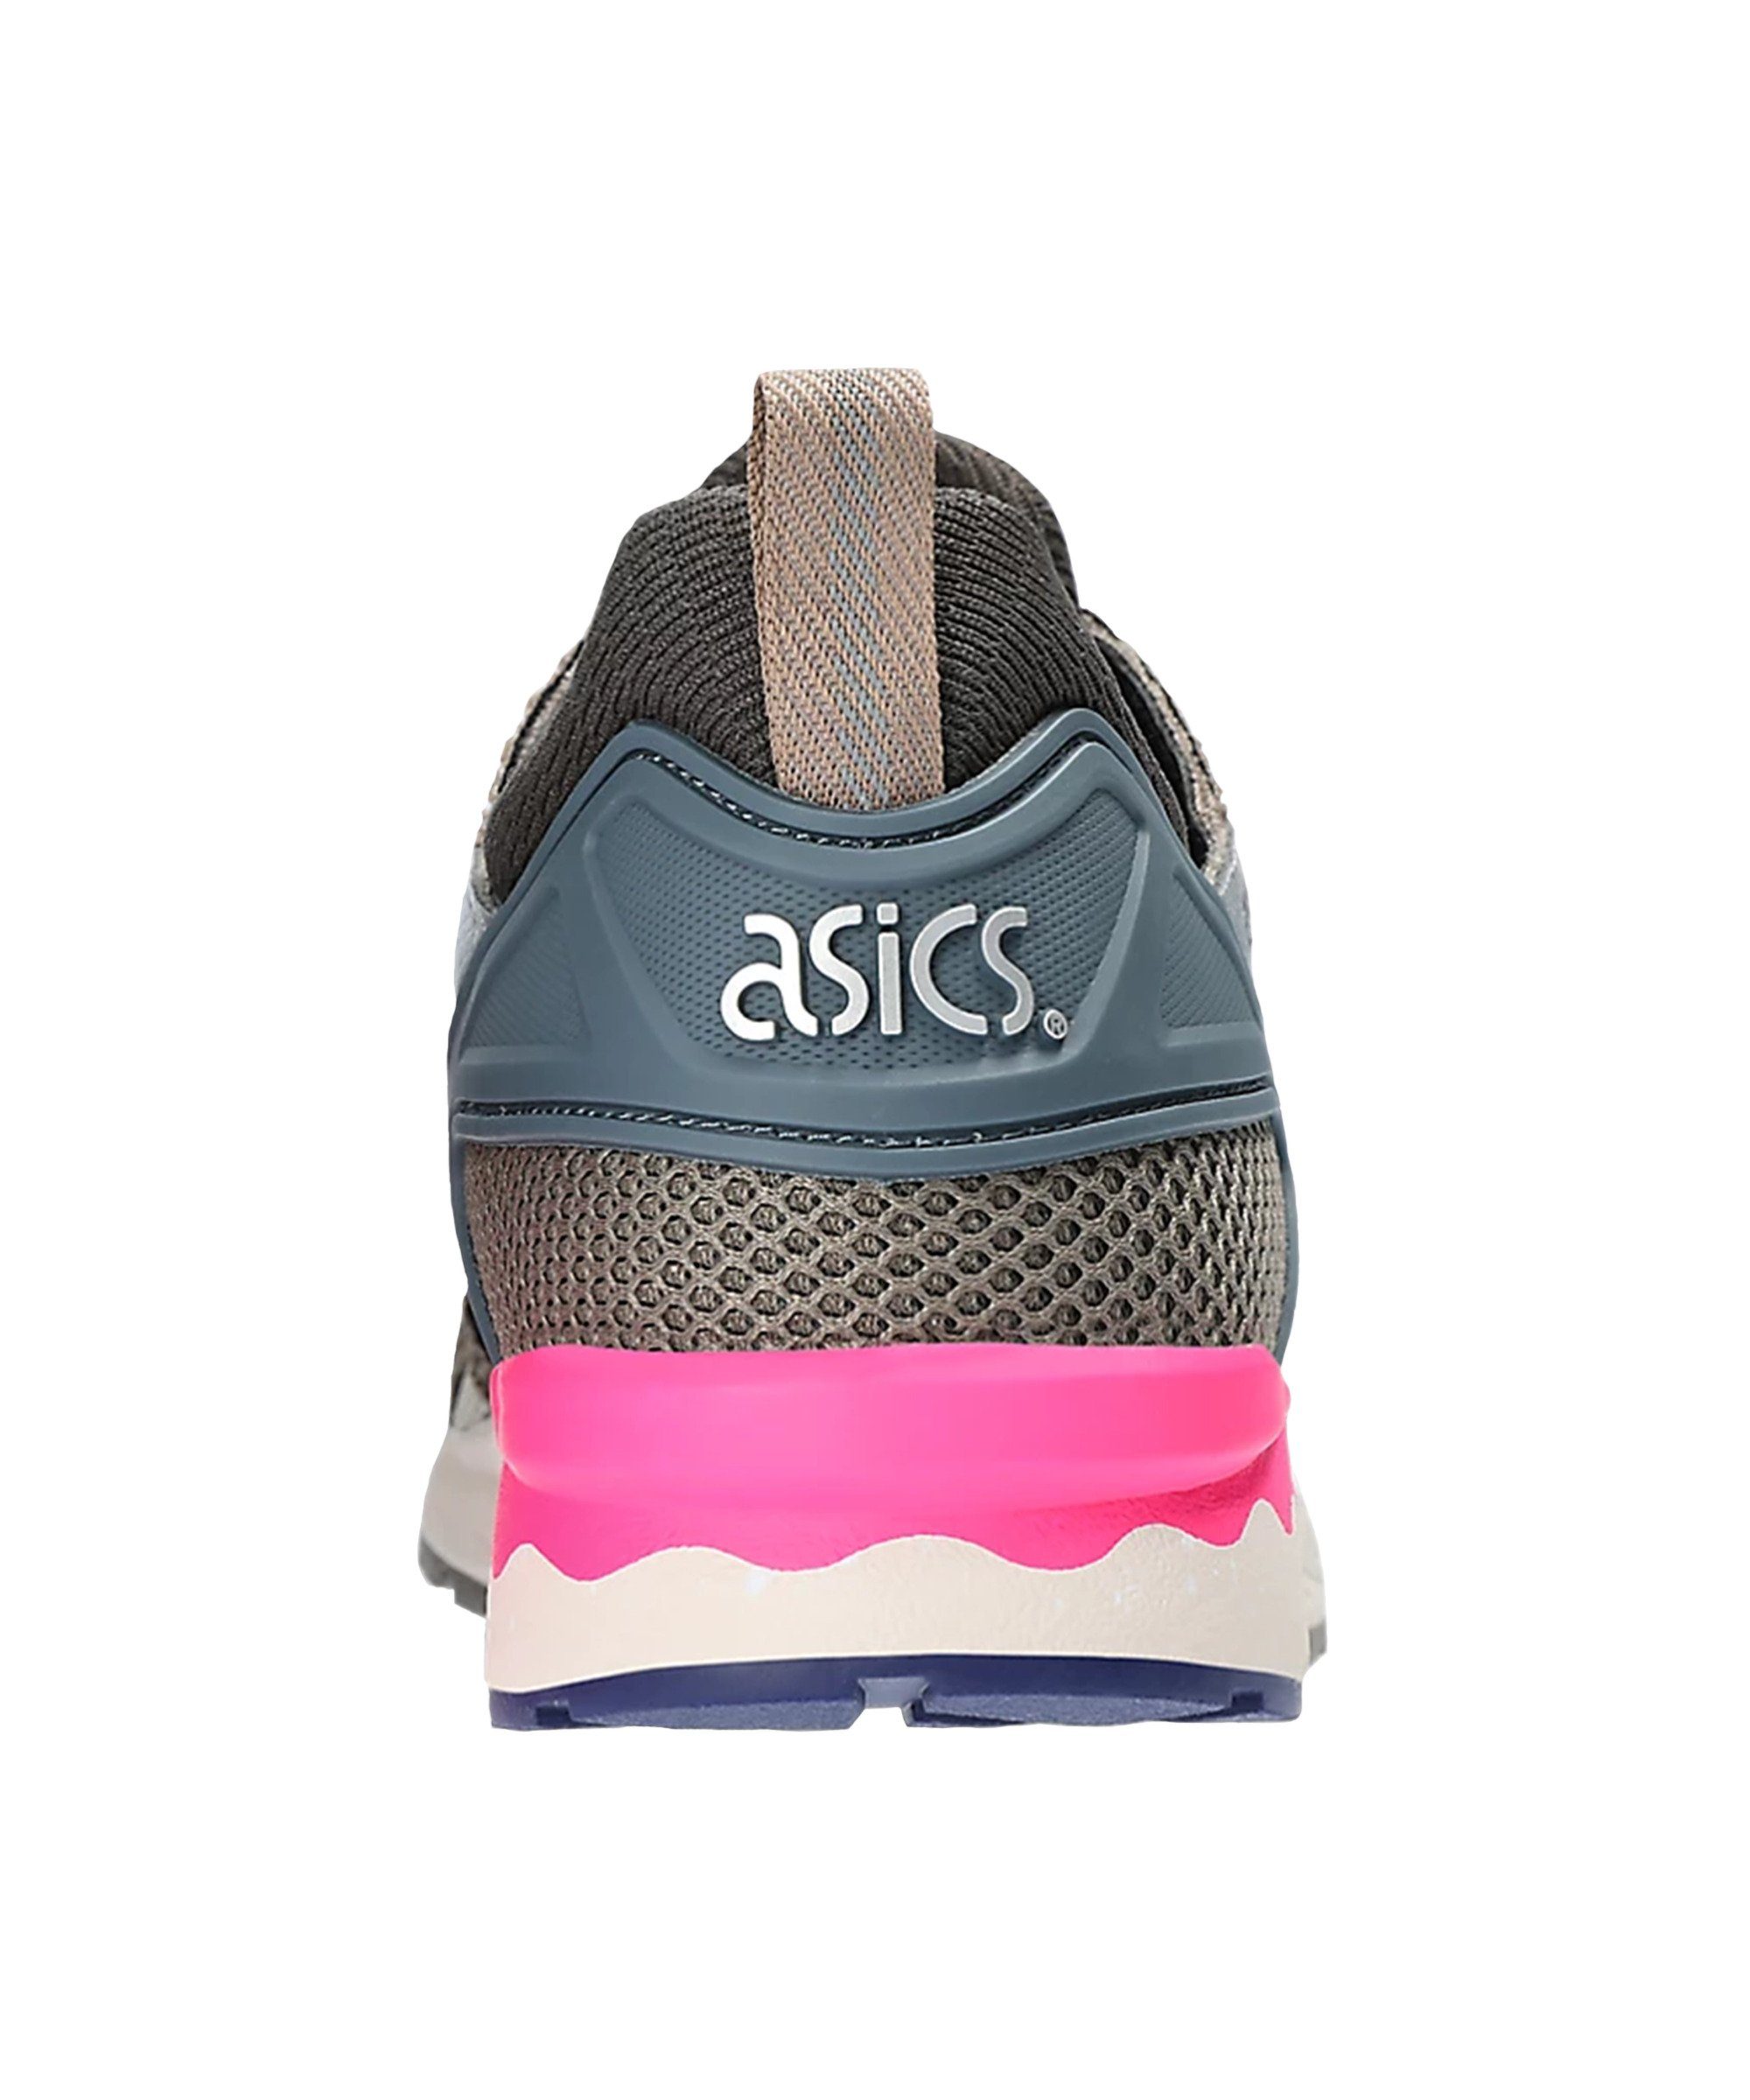 Asics Gel-Lyte V Sneaker braunbeige